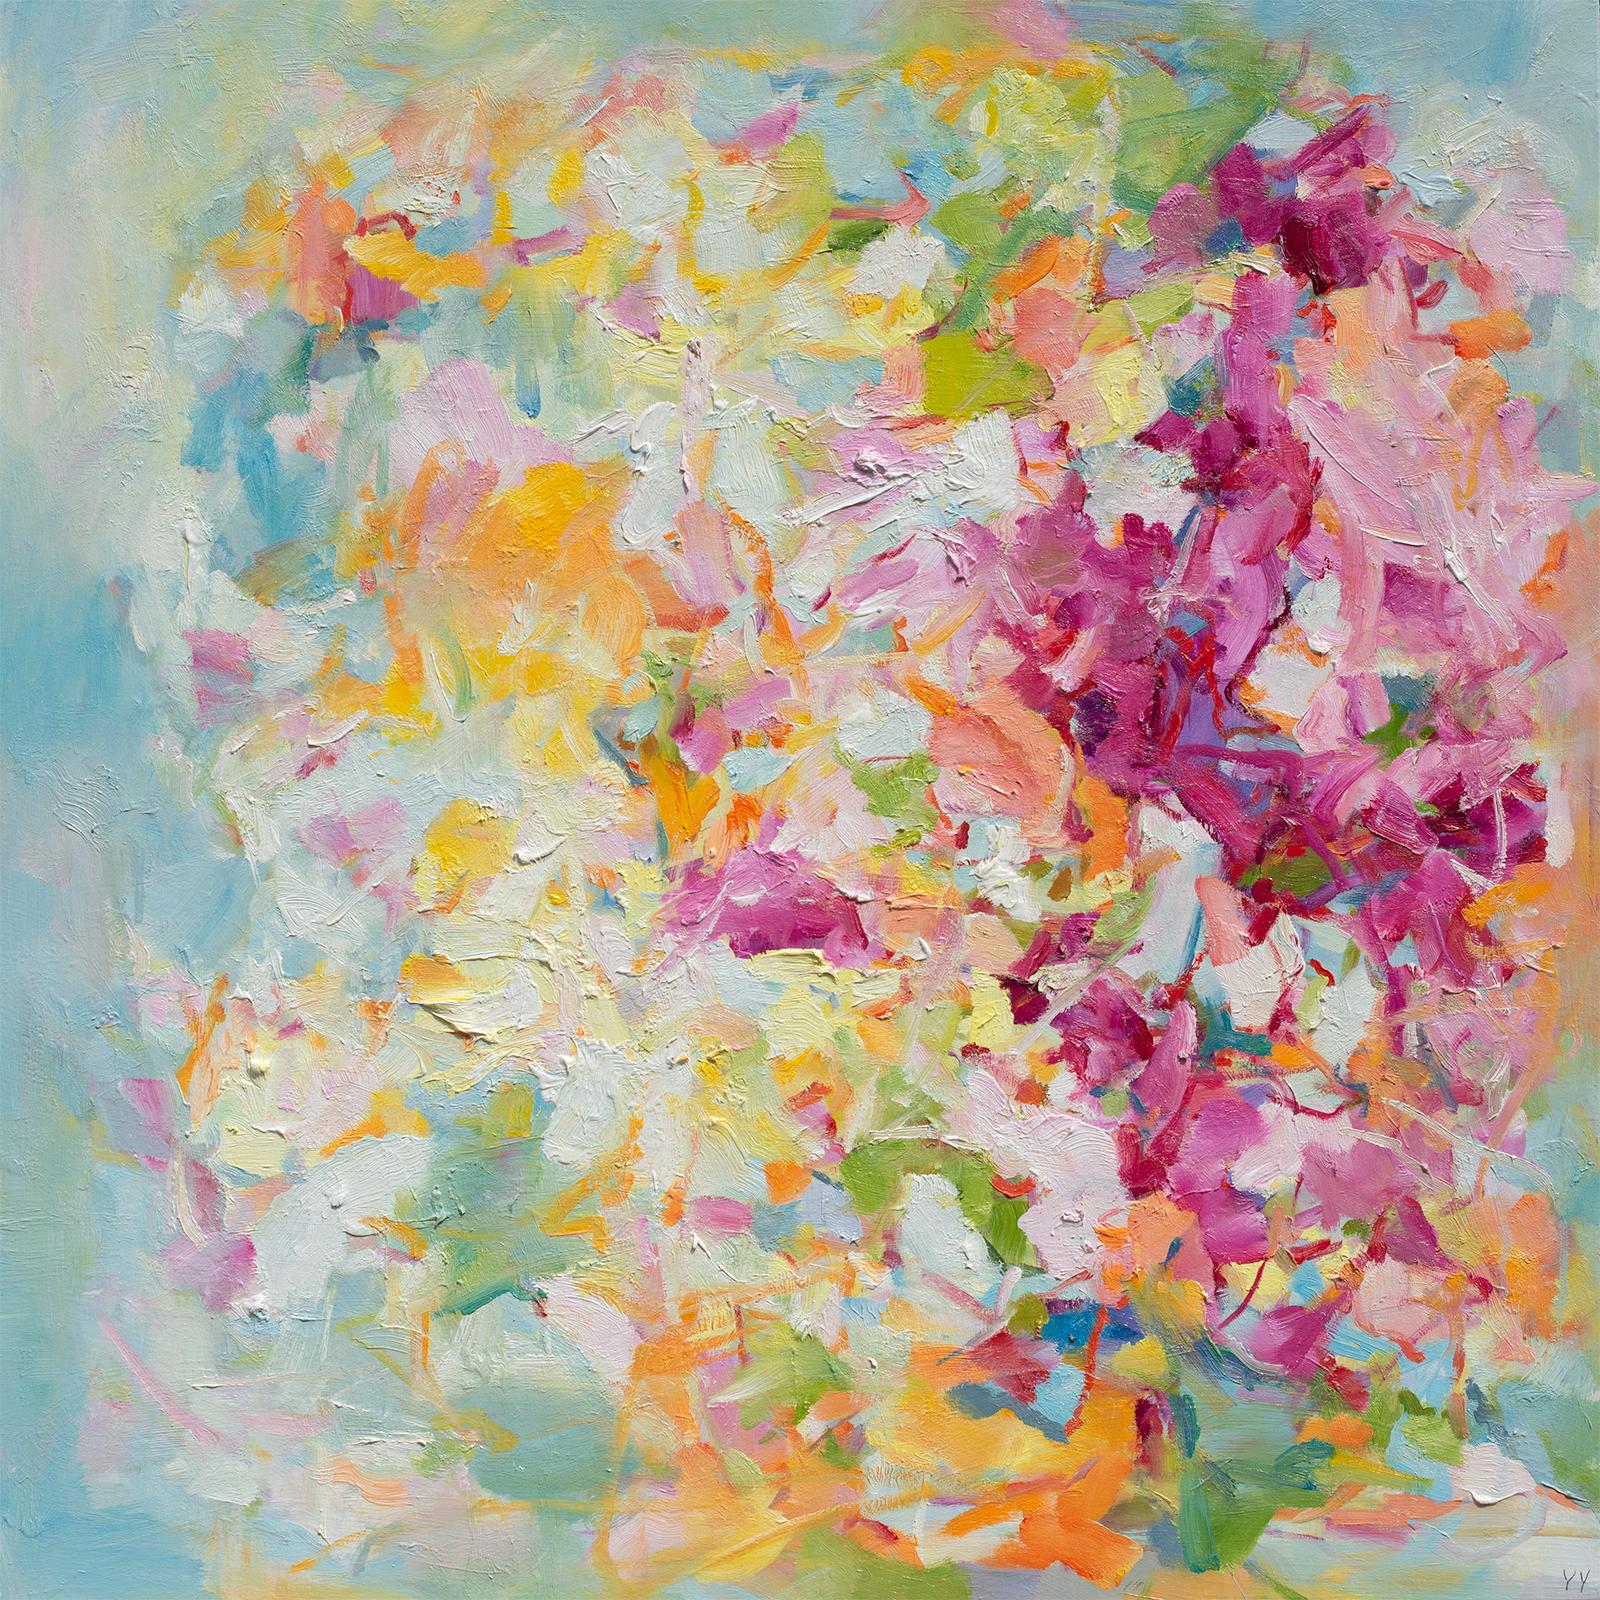 Flourish" 2023 von dem chinesisch-kanadischen Künstler Yangyang Pan. Öl auf Leinwand, 36 x 36 Zoll. / Rahmen: 37 x 37 in. Dieses wunderschöne abstrakt-expressionistische Landschaftsgemälde enthält gestische Pinselstriche, die an einen Blumengarten